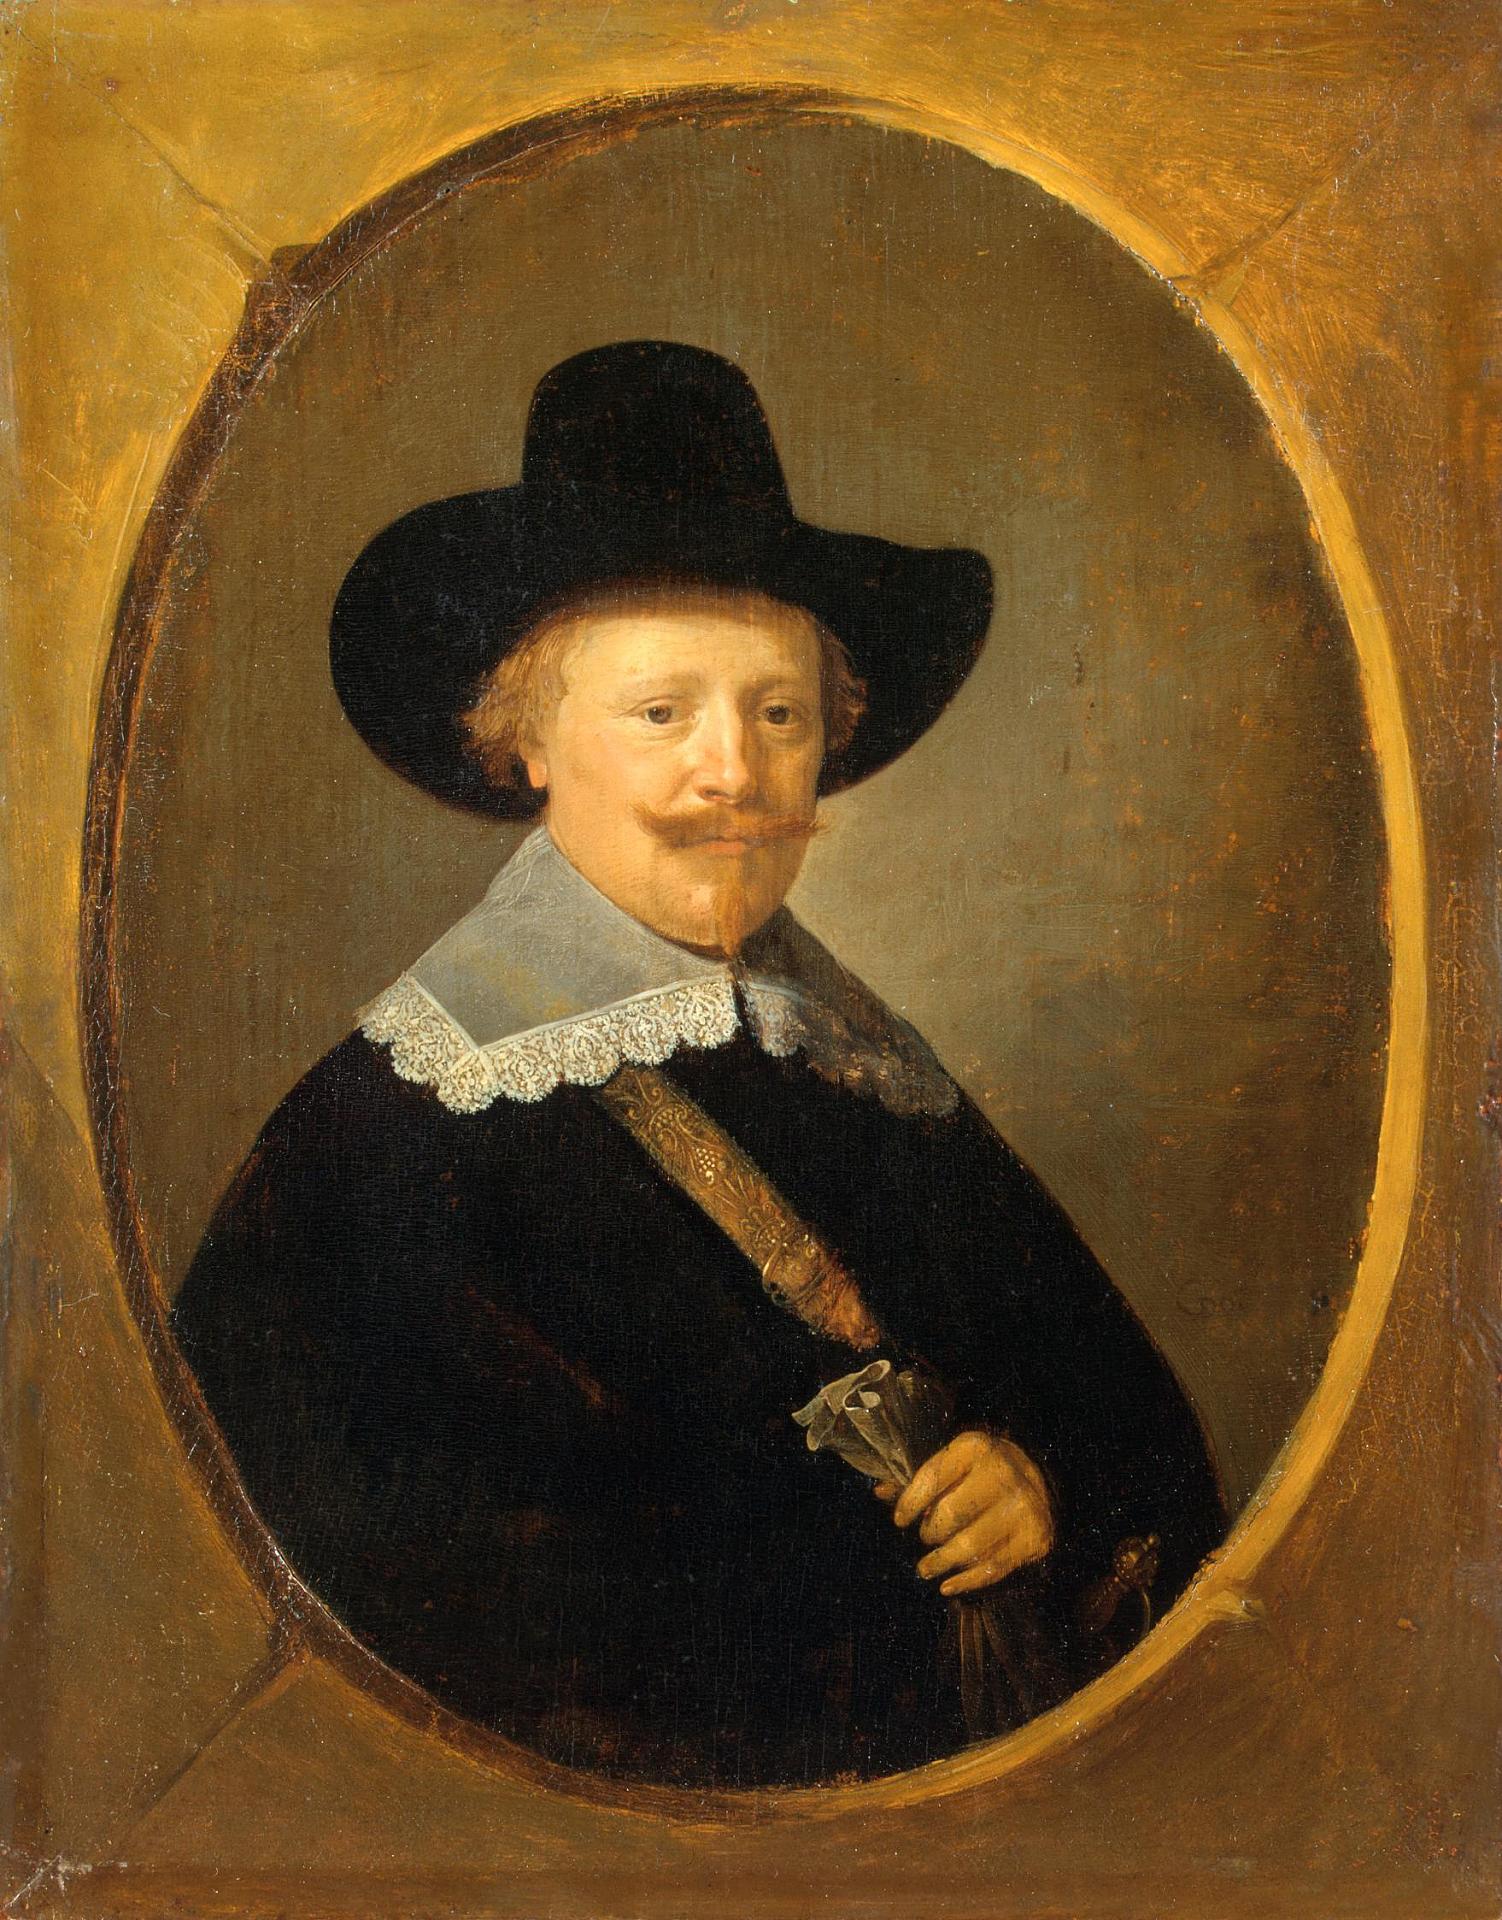 Герард Доу. "Мужской портрет". 1640-1645. Эрмитаж, Санкт-Петербург.